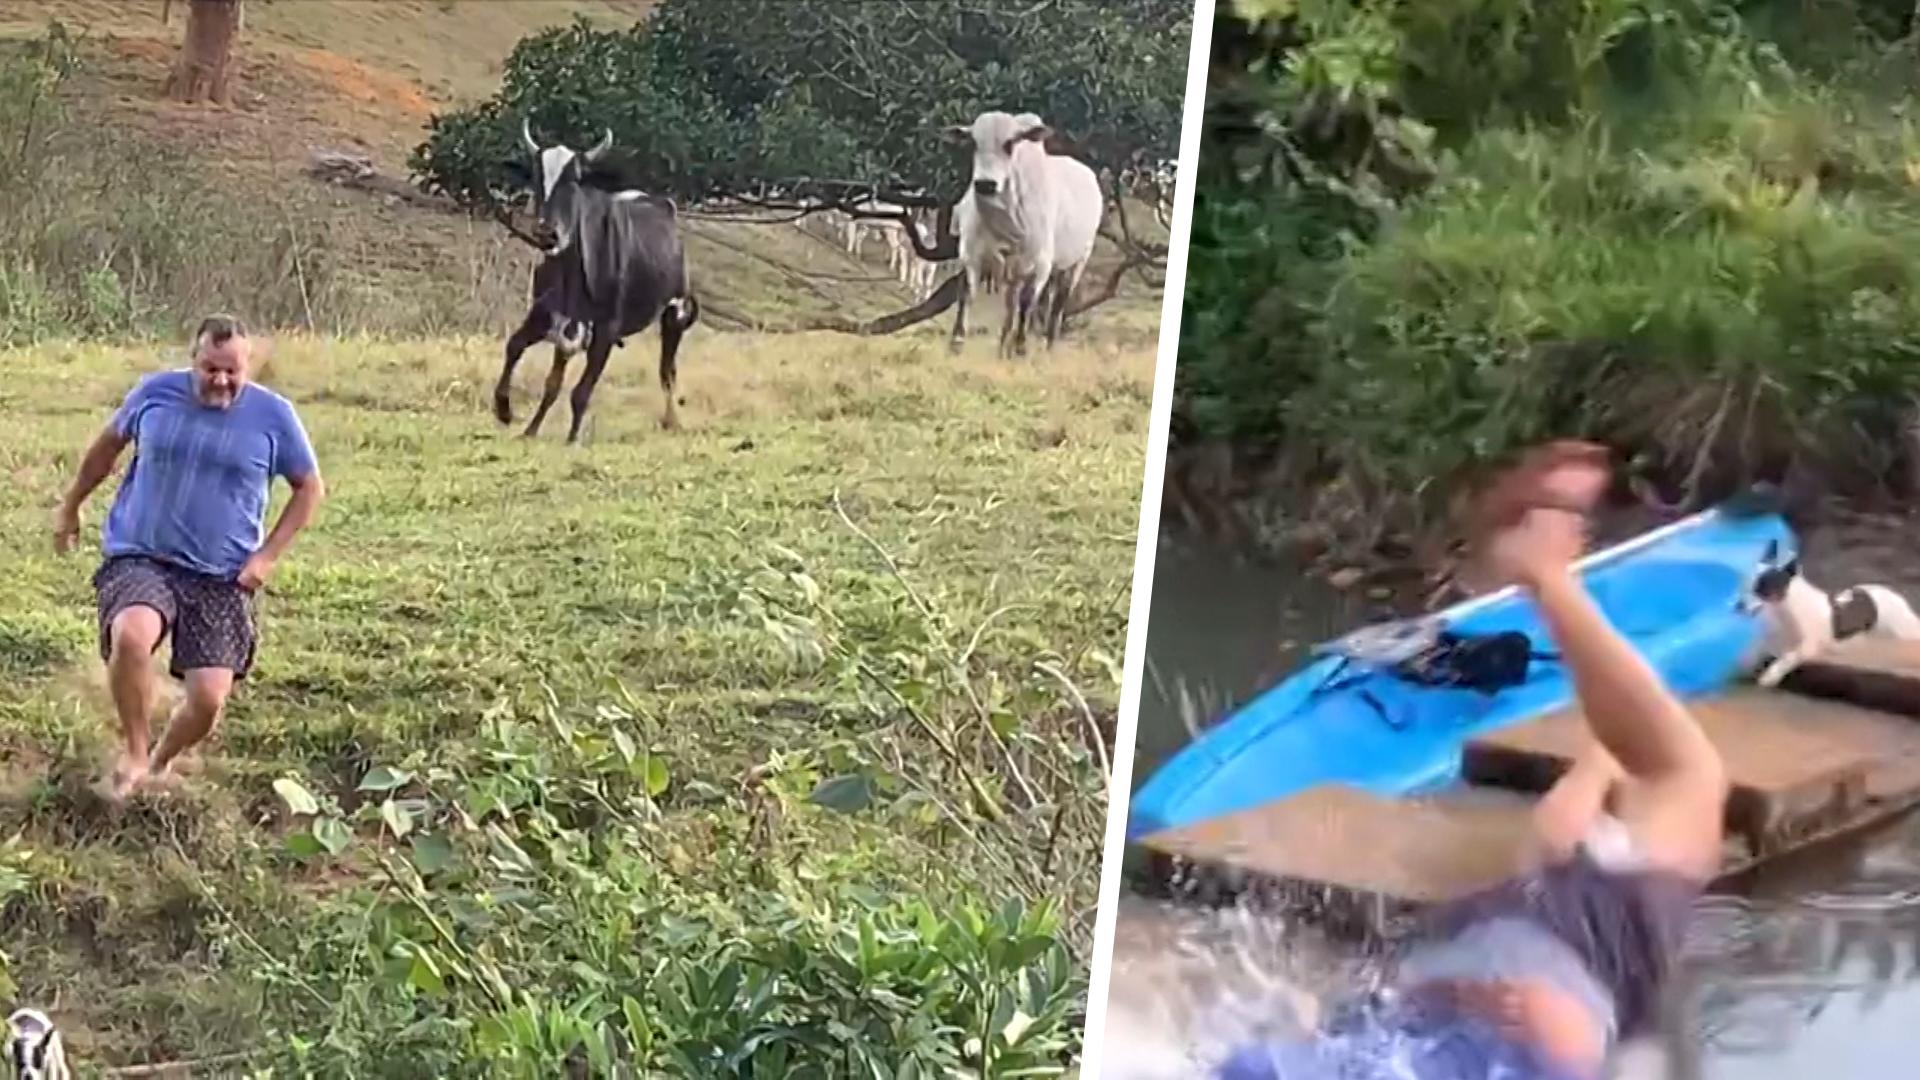 Mann provoziert Rinder - und bereut es sofort! Kleiner Ausflug in den Fluss